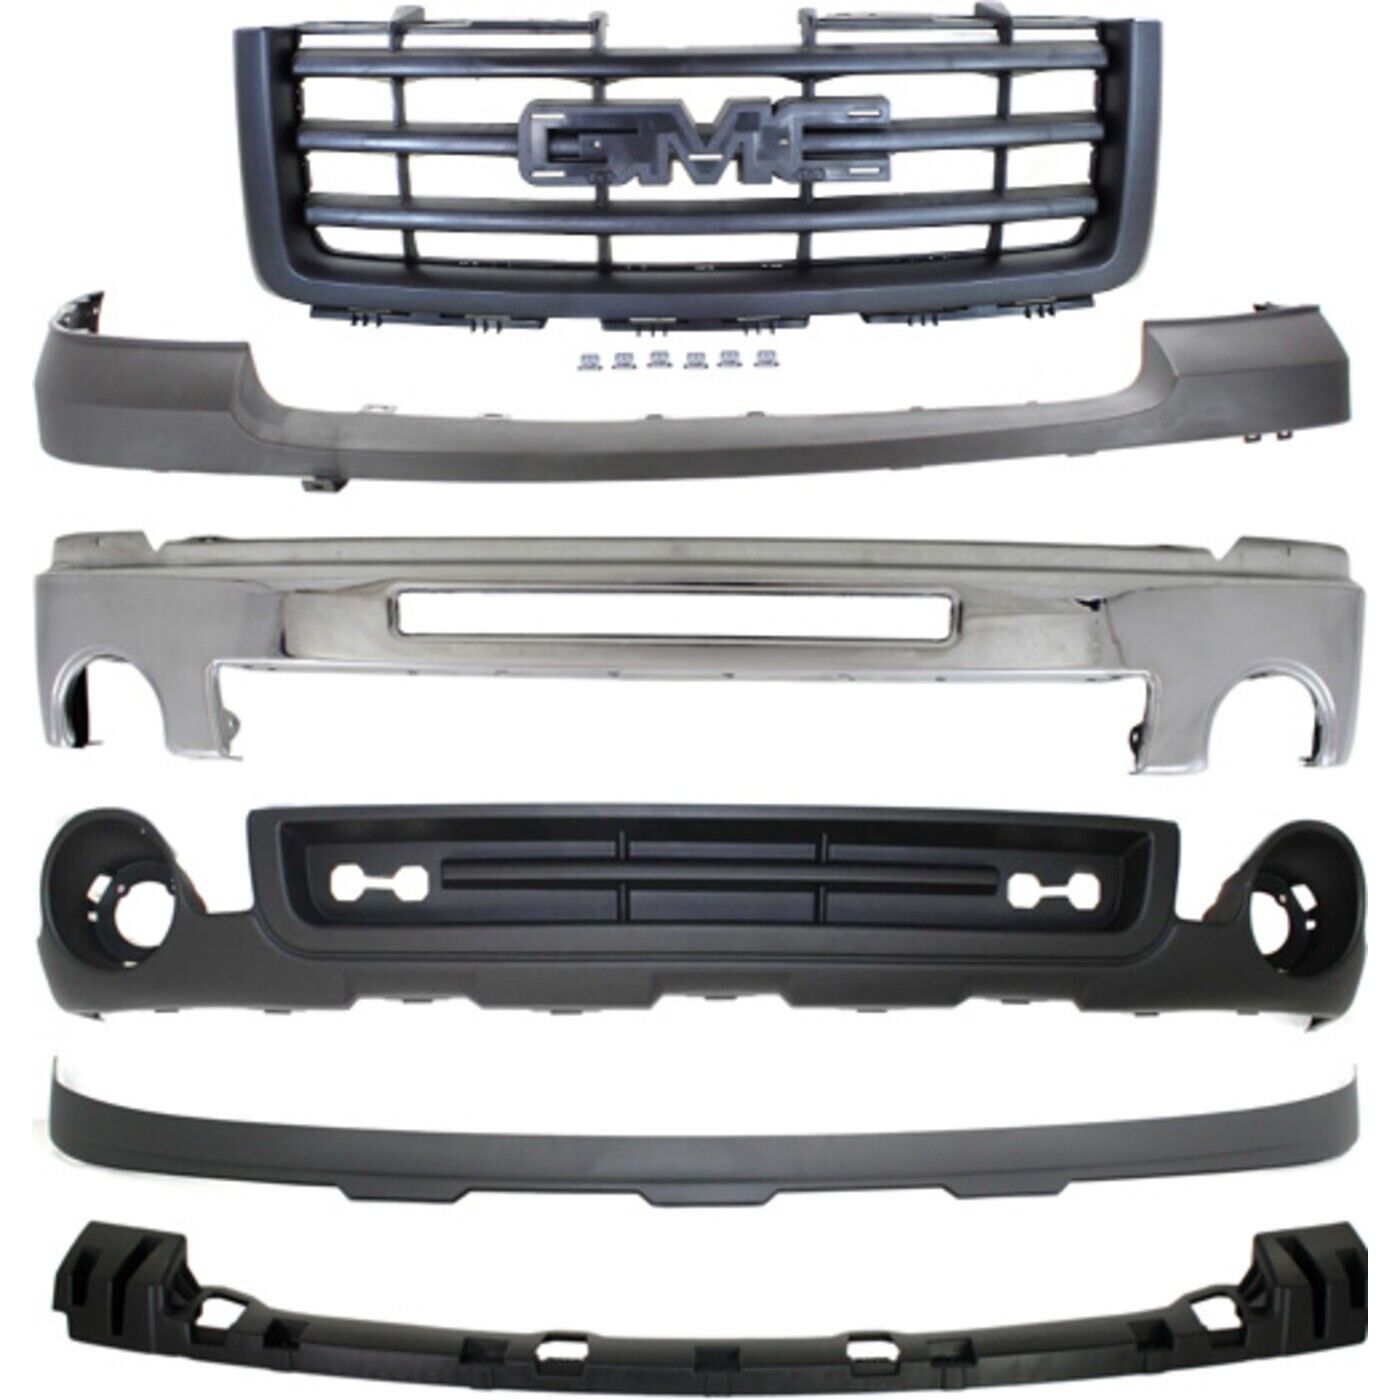 Kit Bumper Face Bars Front Chrome for GMC Sierra 1500 Truck 2007-2013